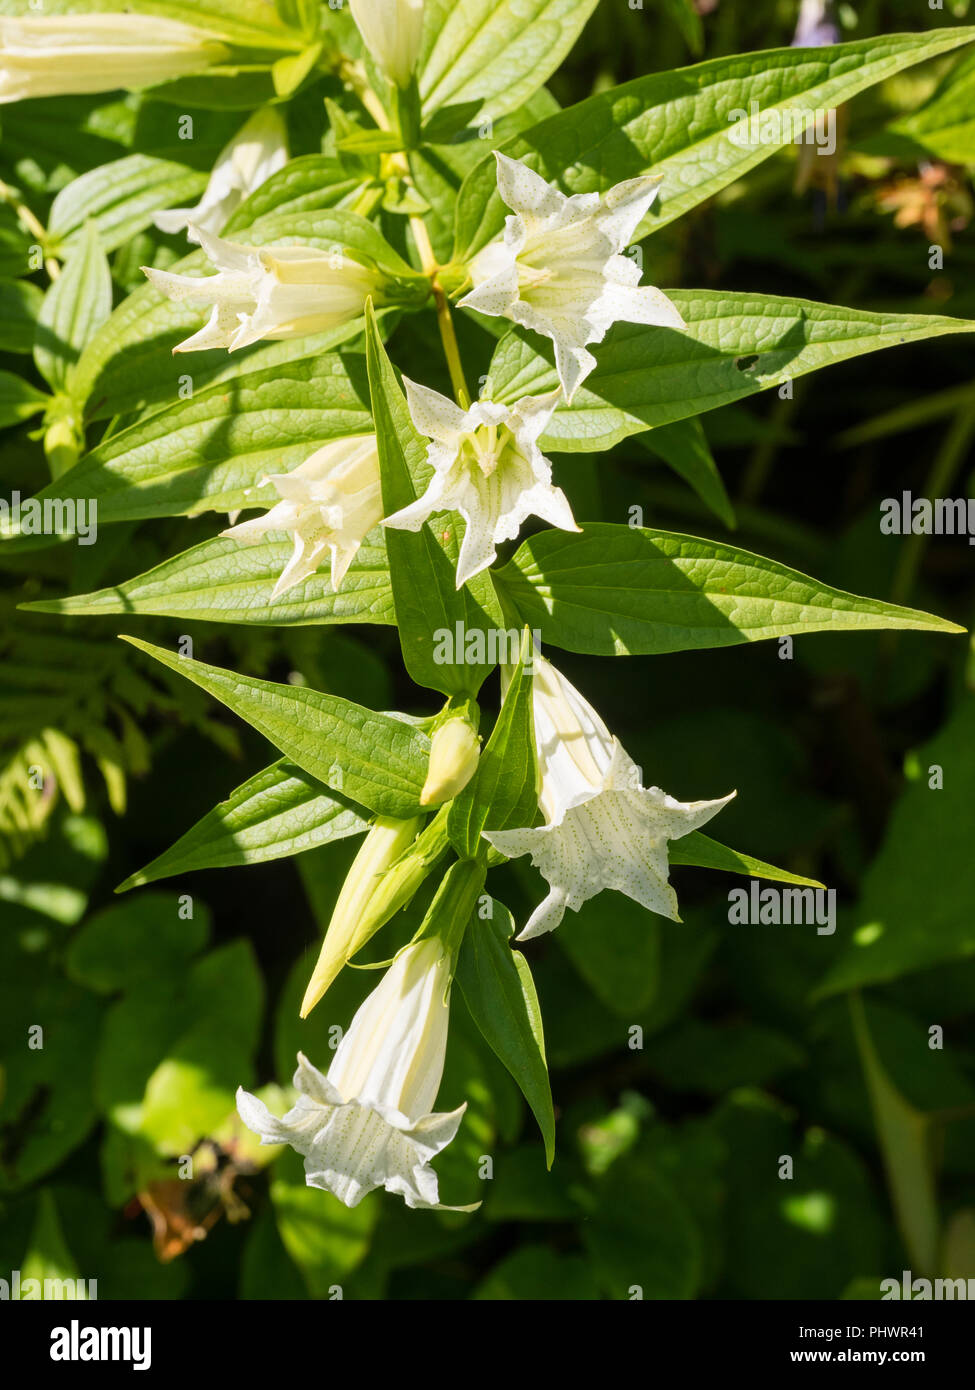 Se arquean los tallos de la planta perenne robusta forma blanca del sauce, genciana Gentiana asclepiadea 'Alba' Foto de stock